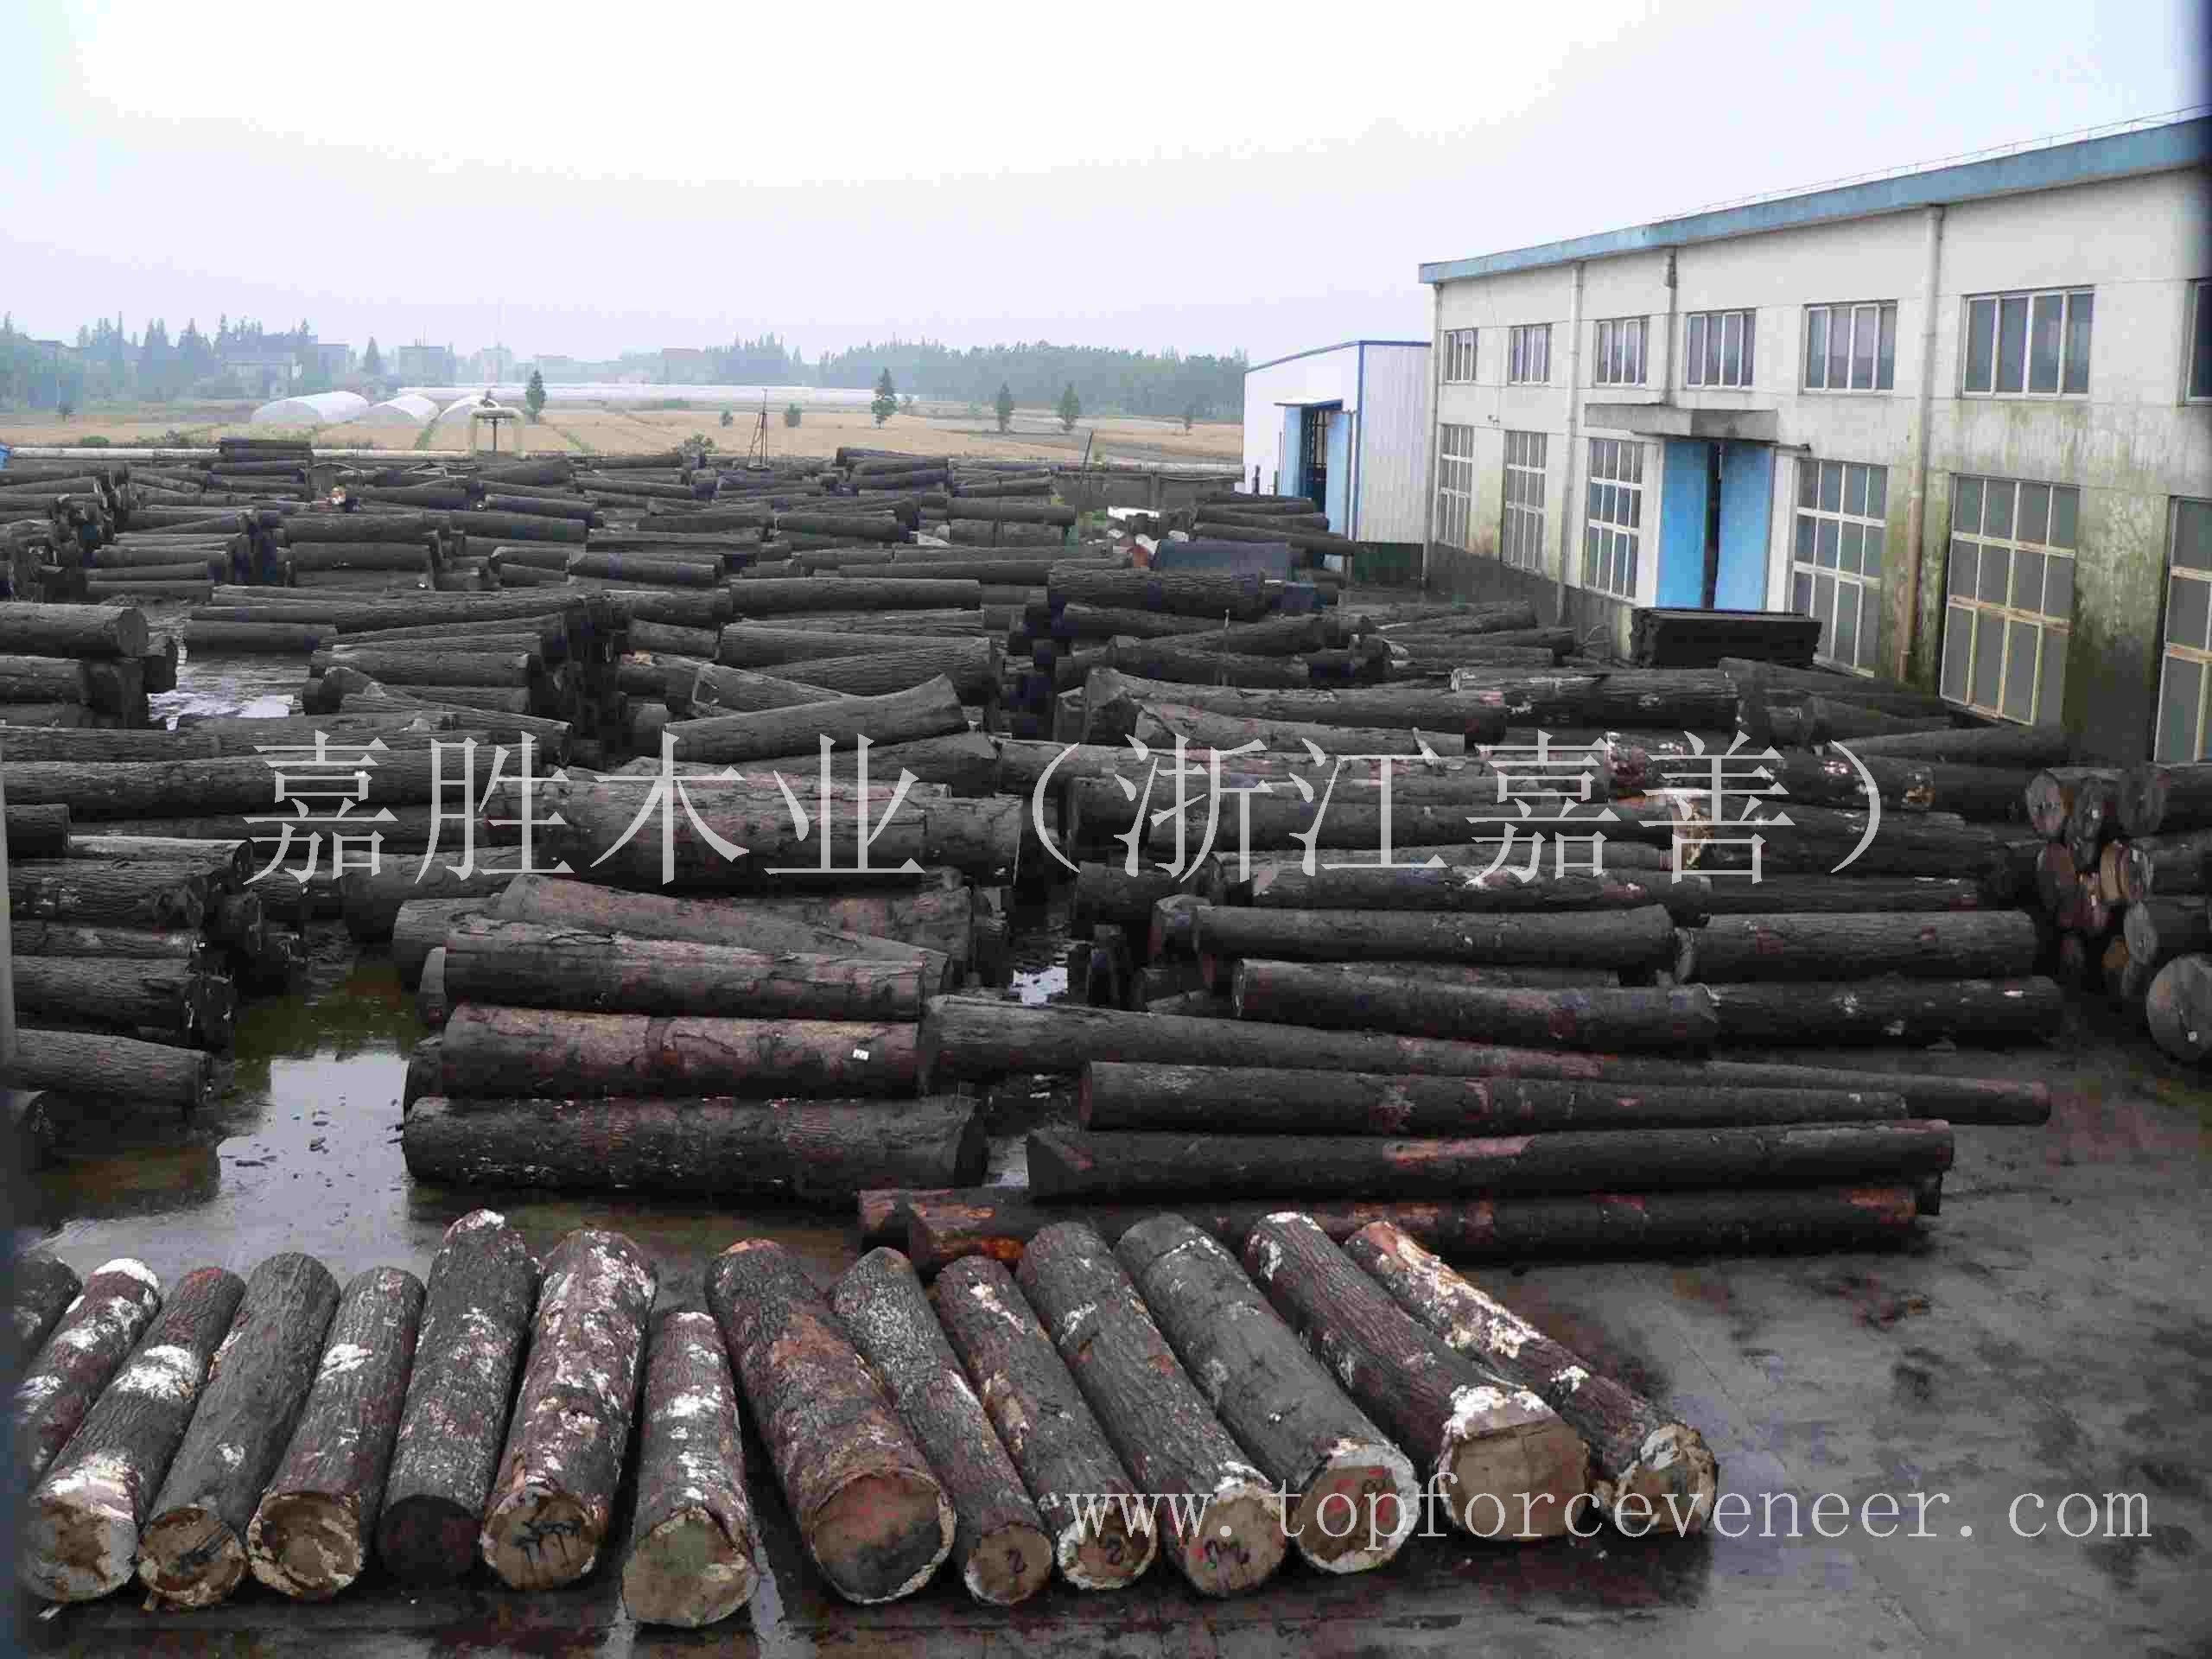 北京美国黑胡桃原木 Beijing American Walnut Veneer Logs / Saw Logs